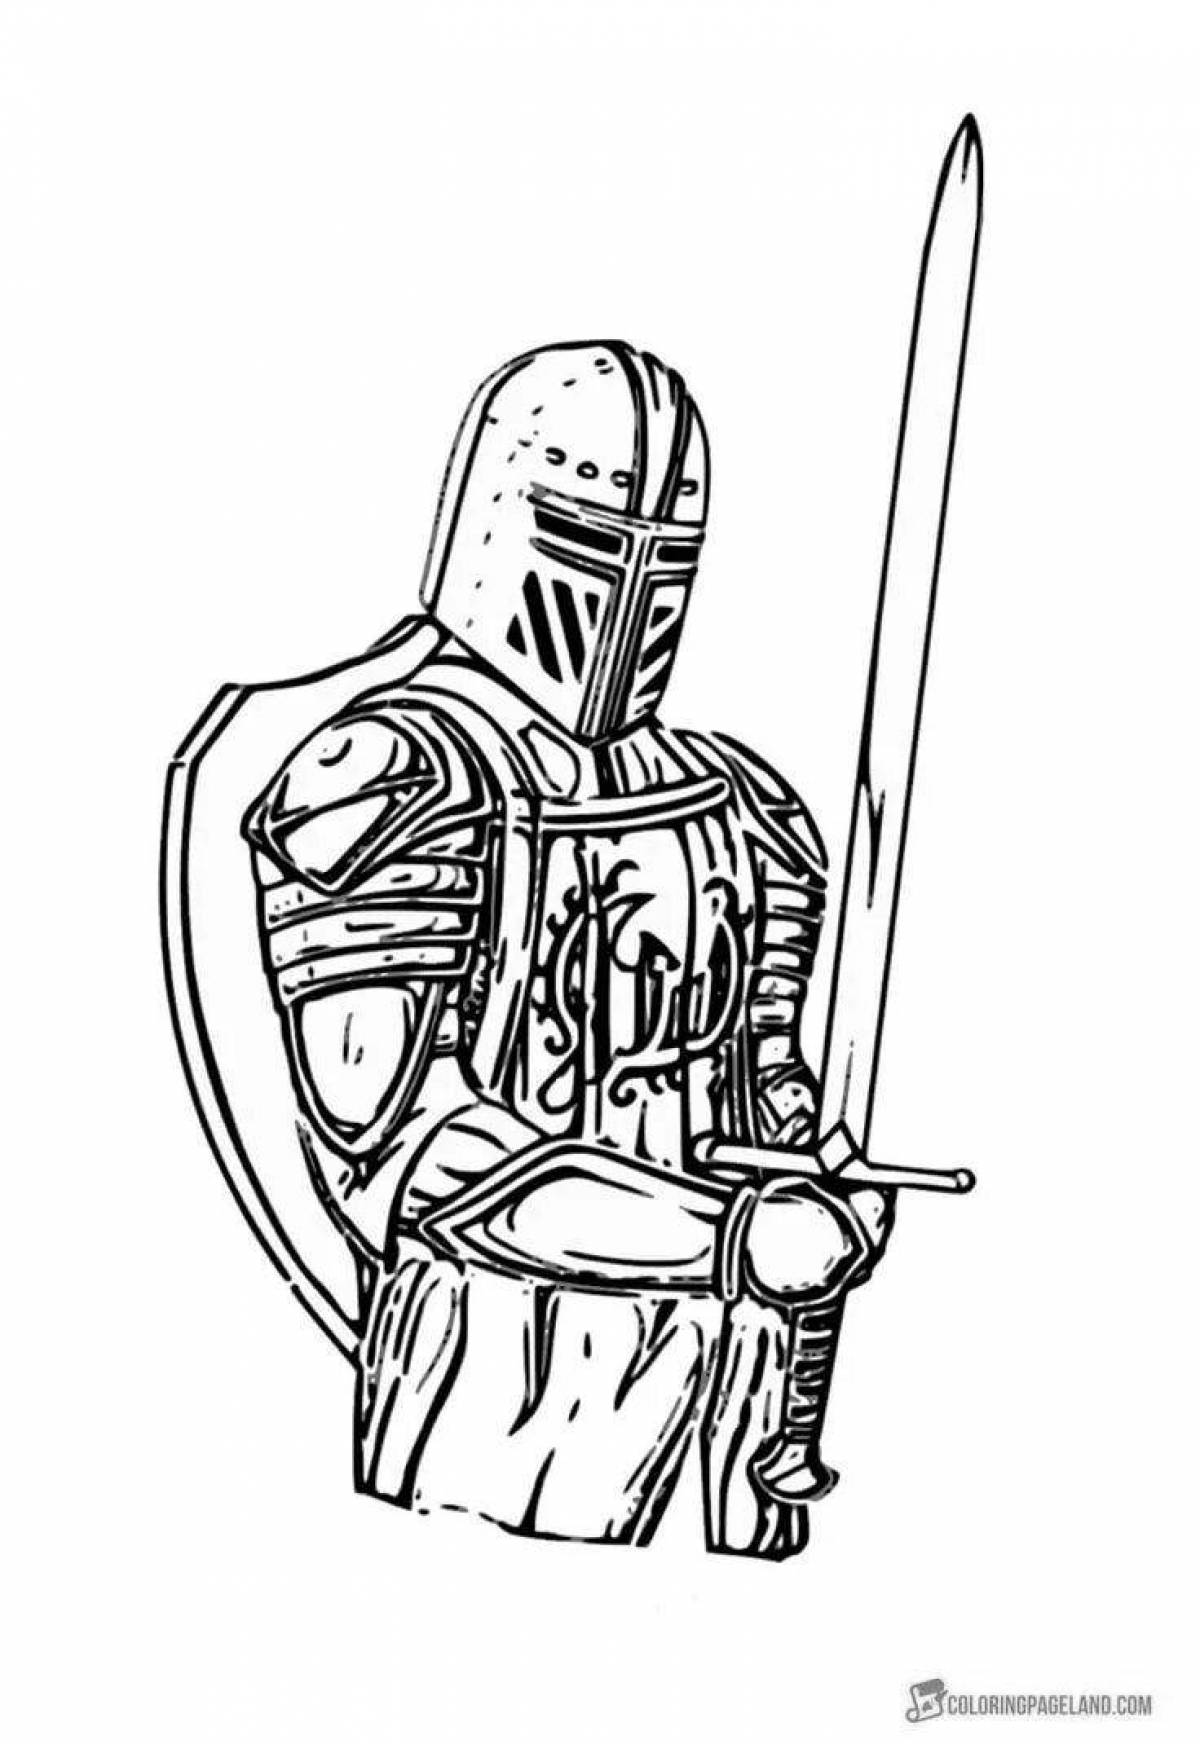 Иллюстративная раскраска рыцарь в доспехах